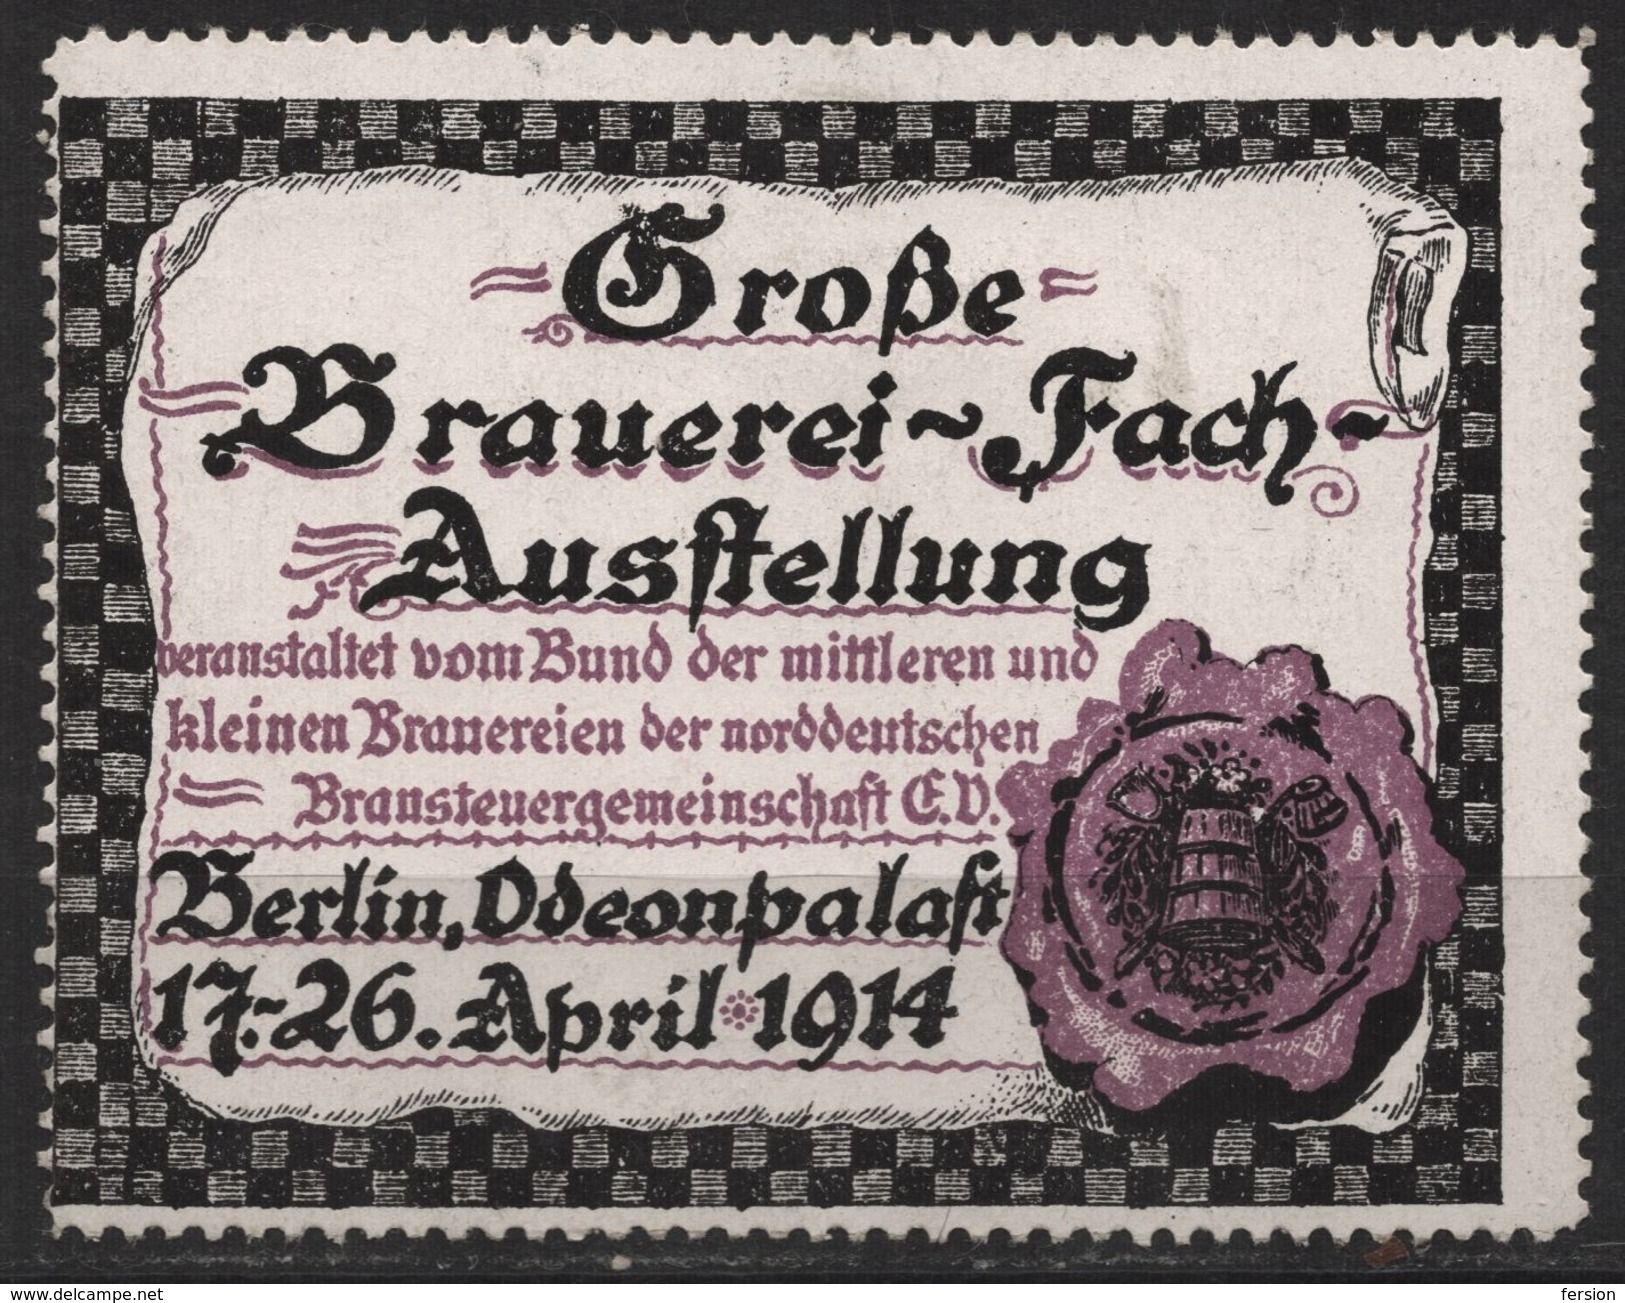 BEER Brewery Industry Exhibition BERLIN / Advertising Stamp - 1914 Germany - LABEL CINDERELLA VIGNETTE - Biere